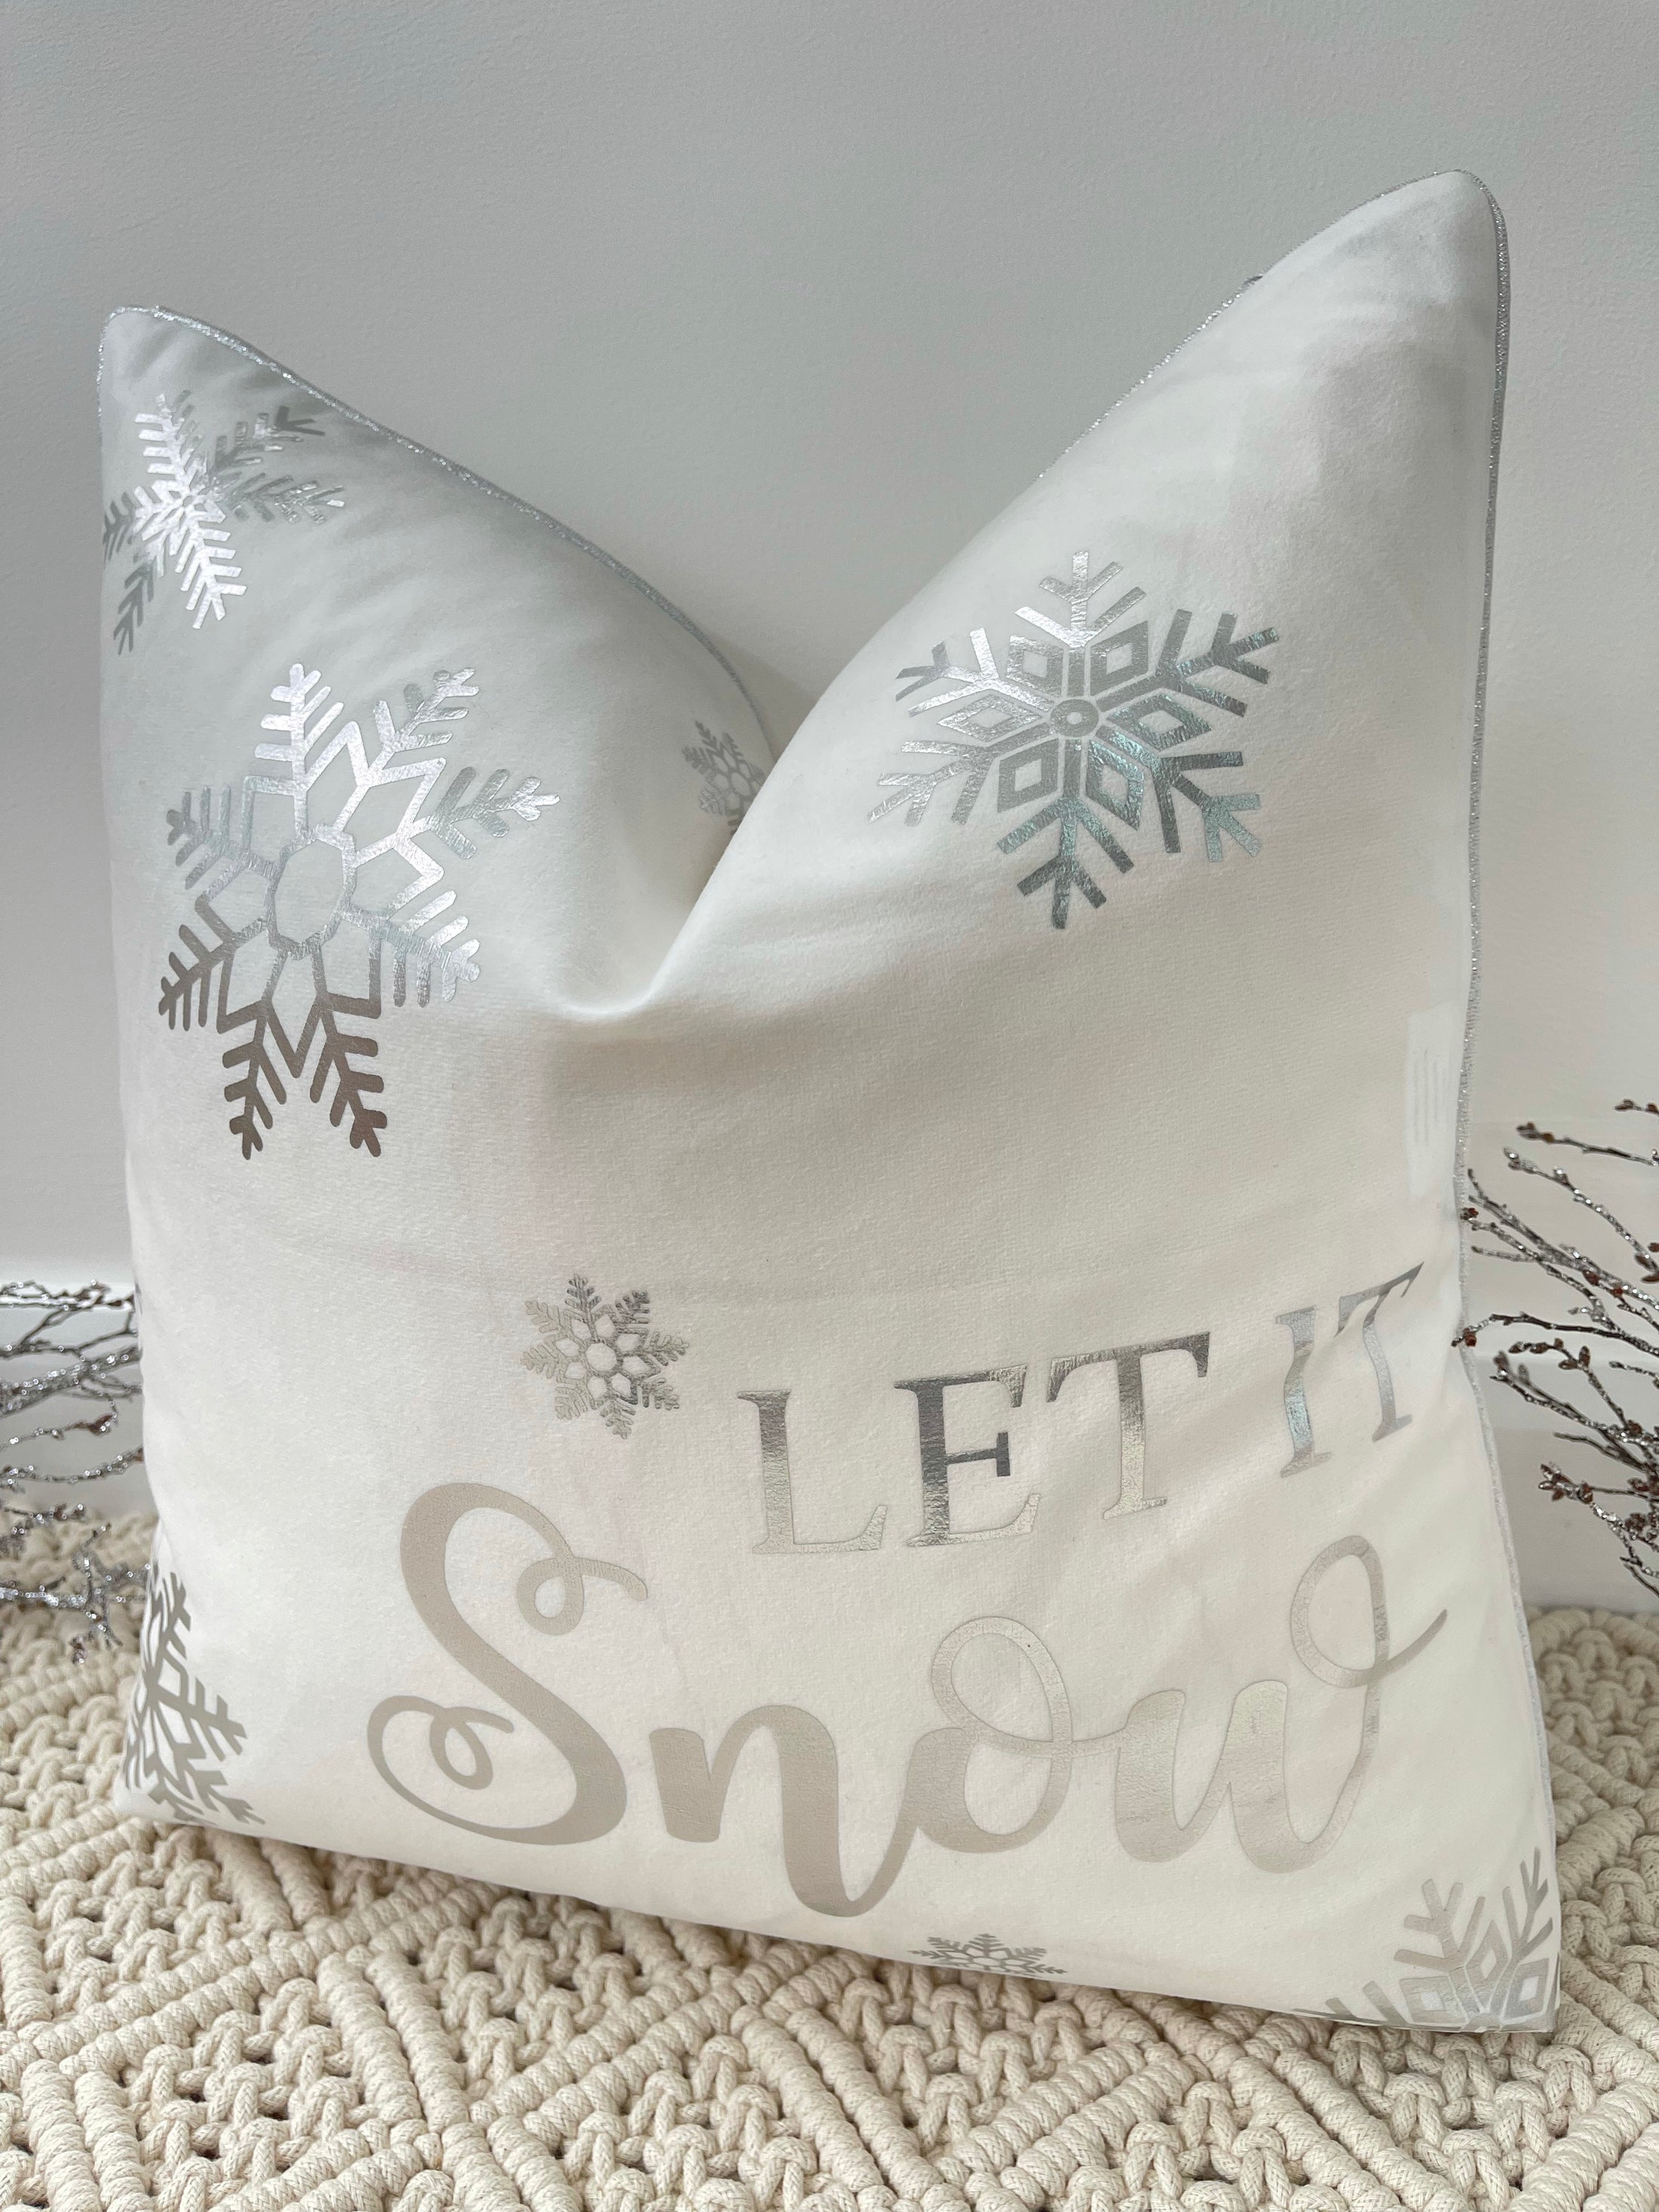 The White Let It Snow Christmas Soft Velvet Cushion